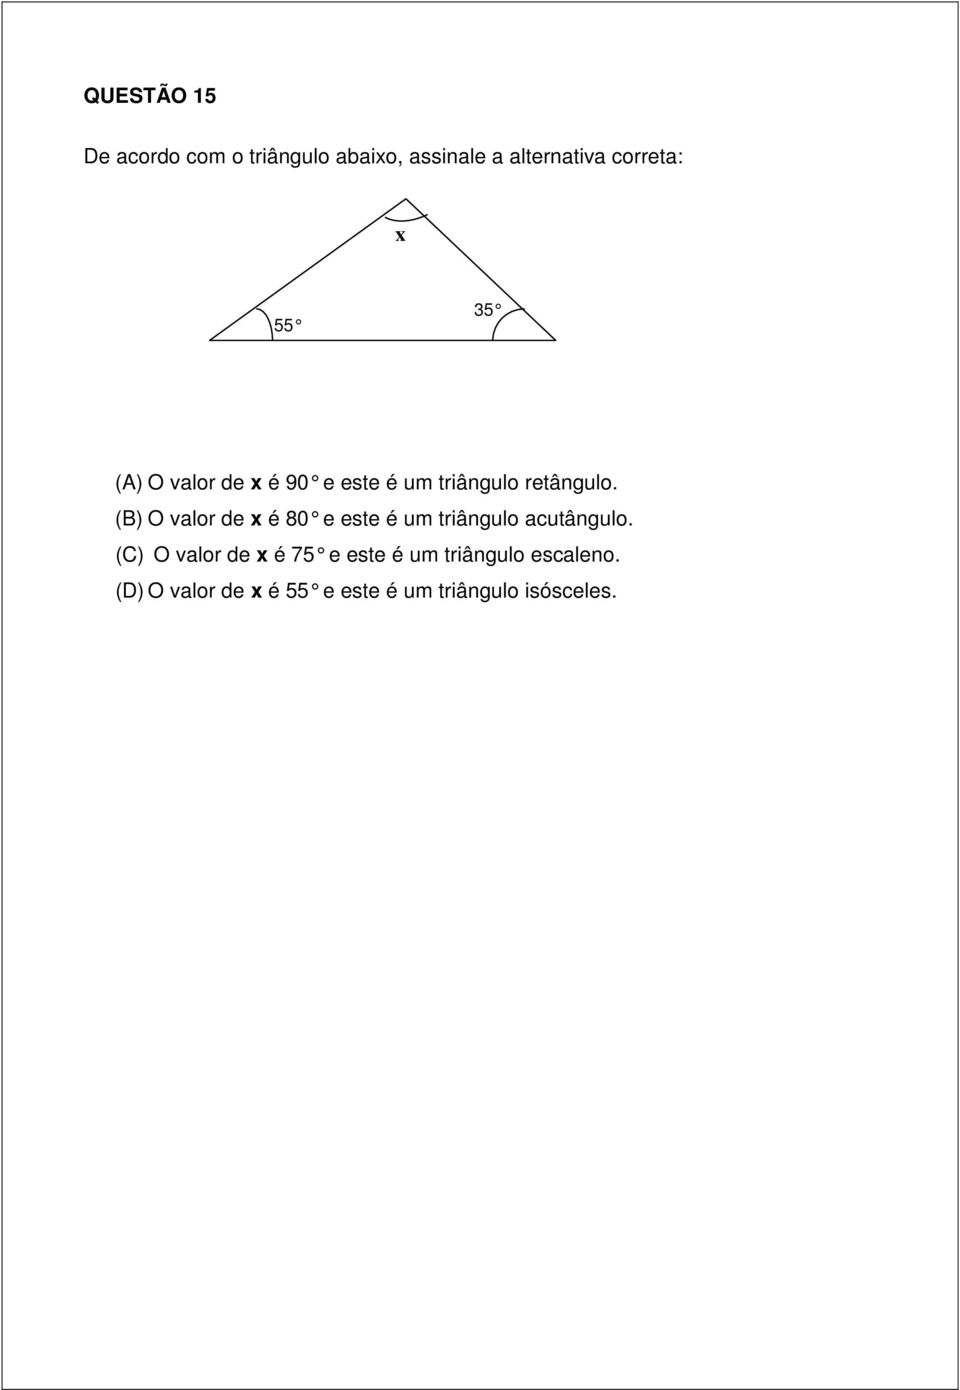 (B) O valor de x é 80 e este é um triângulo acutângulo.